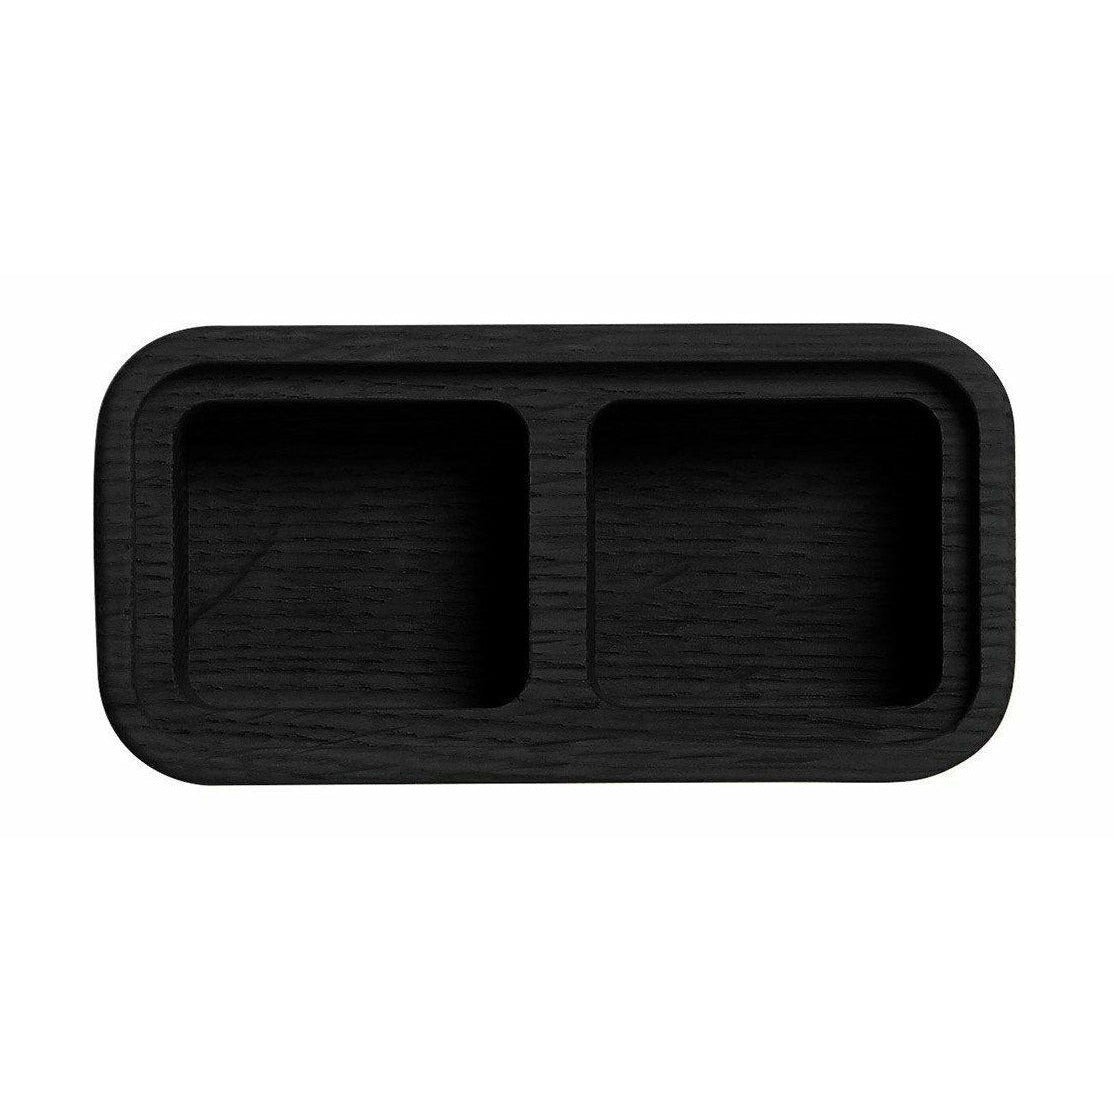 Nábytek Andersen Create Me Box Black, 2 Compartments, 6x12cm